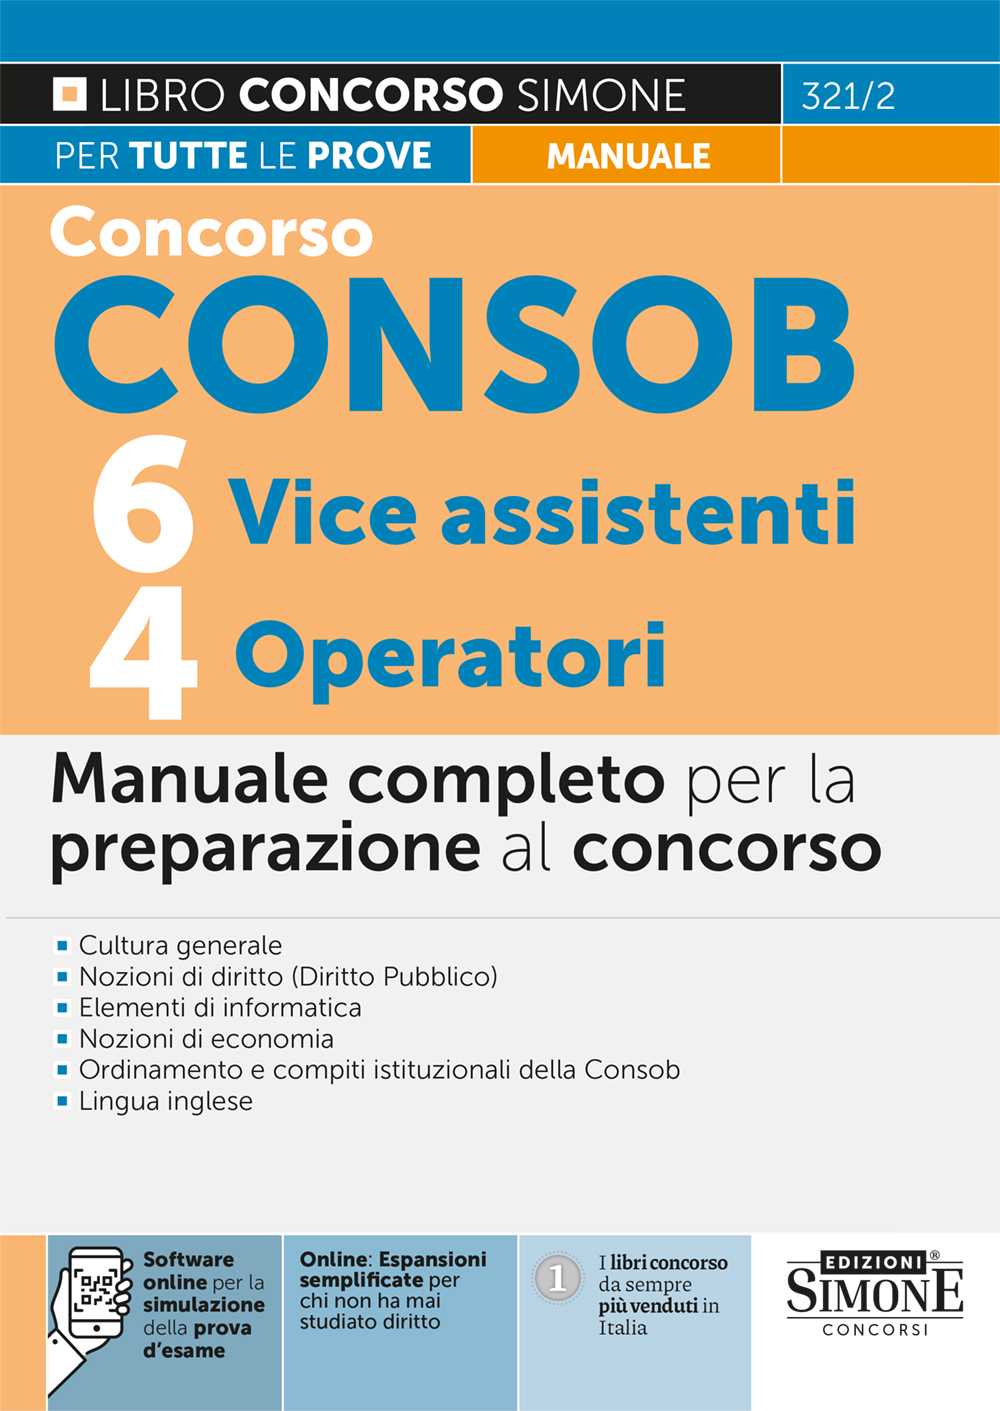 Concorso Consob - 6 Vice assistenti - 4 Operatori - Manuale per la preparazione - 321/2